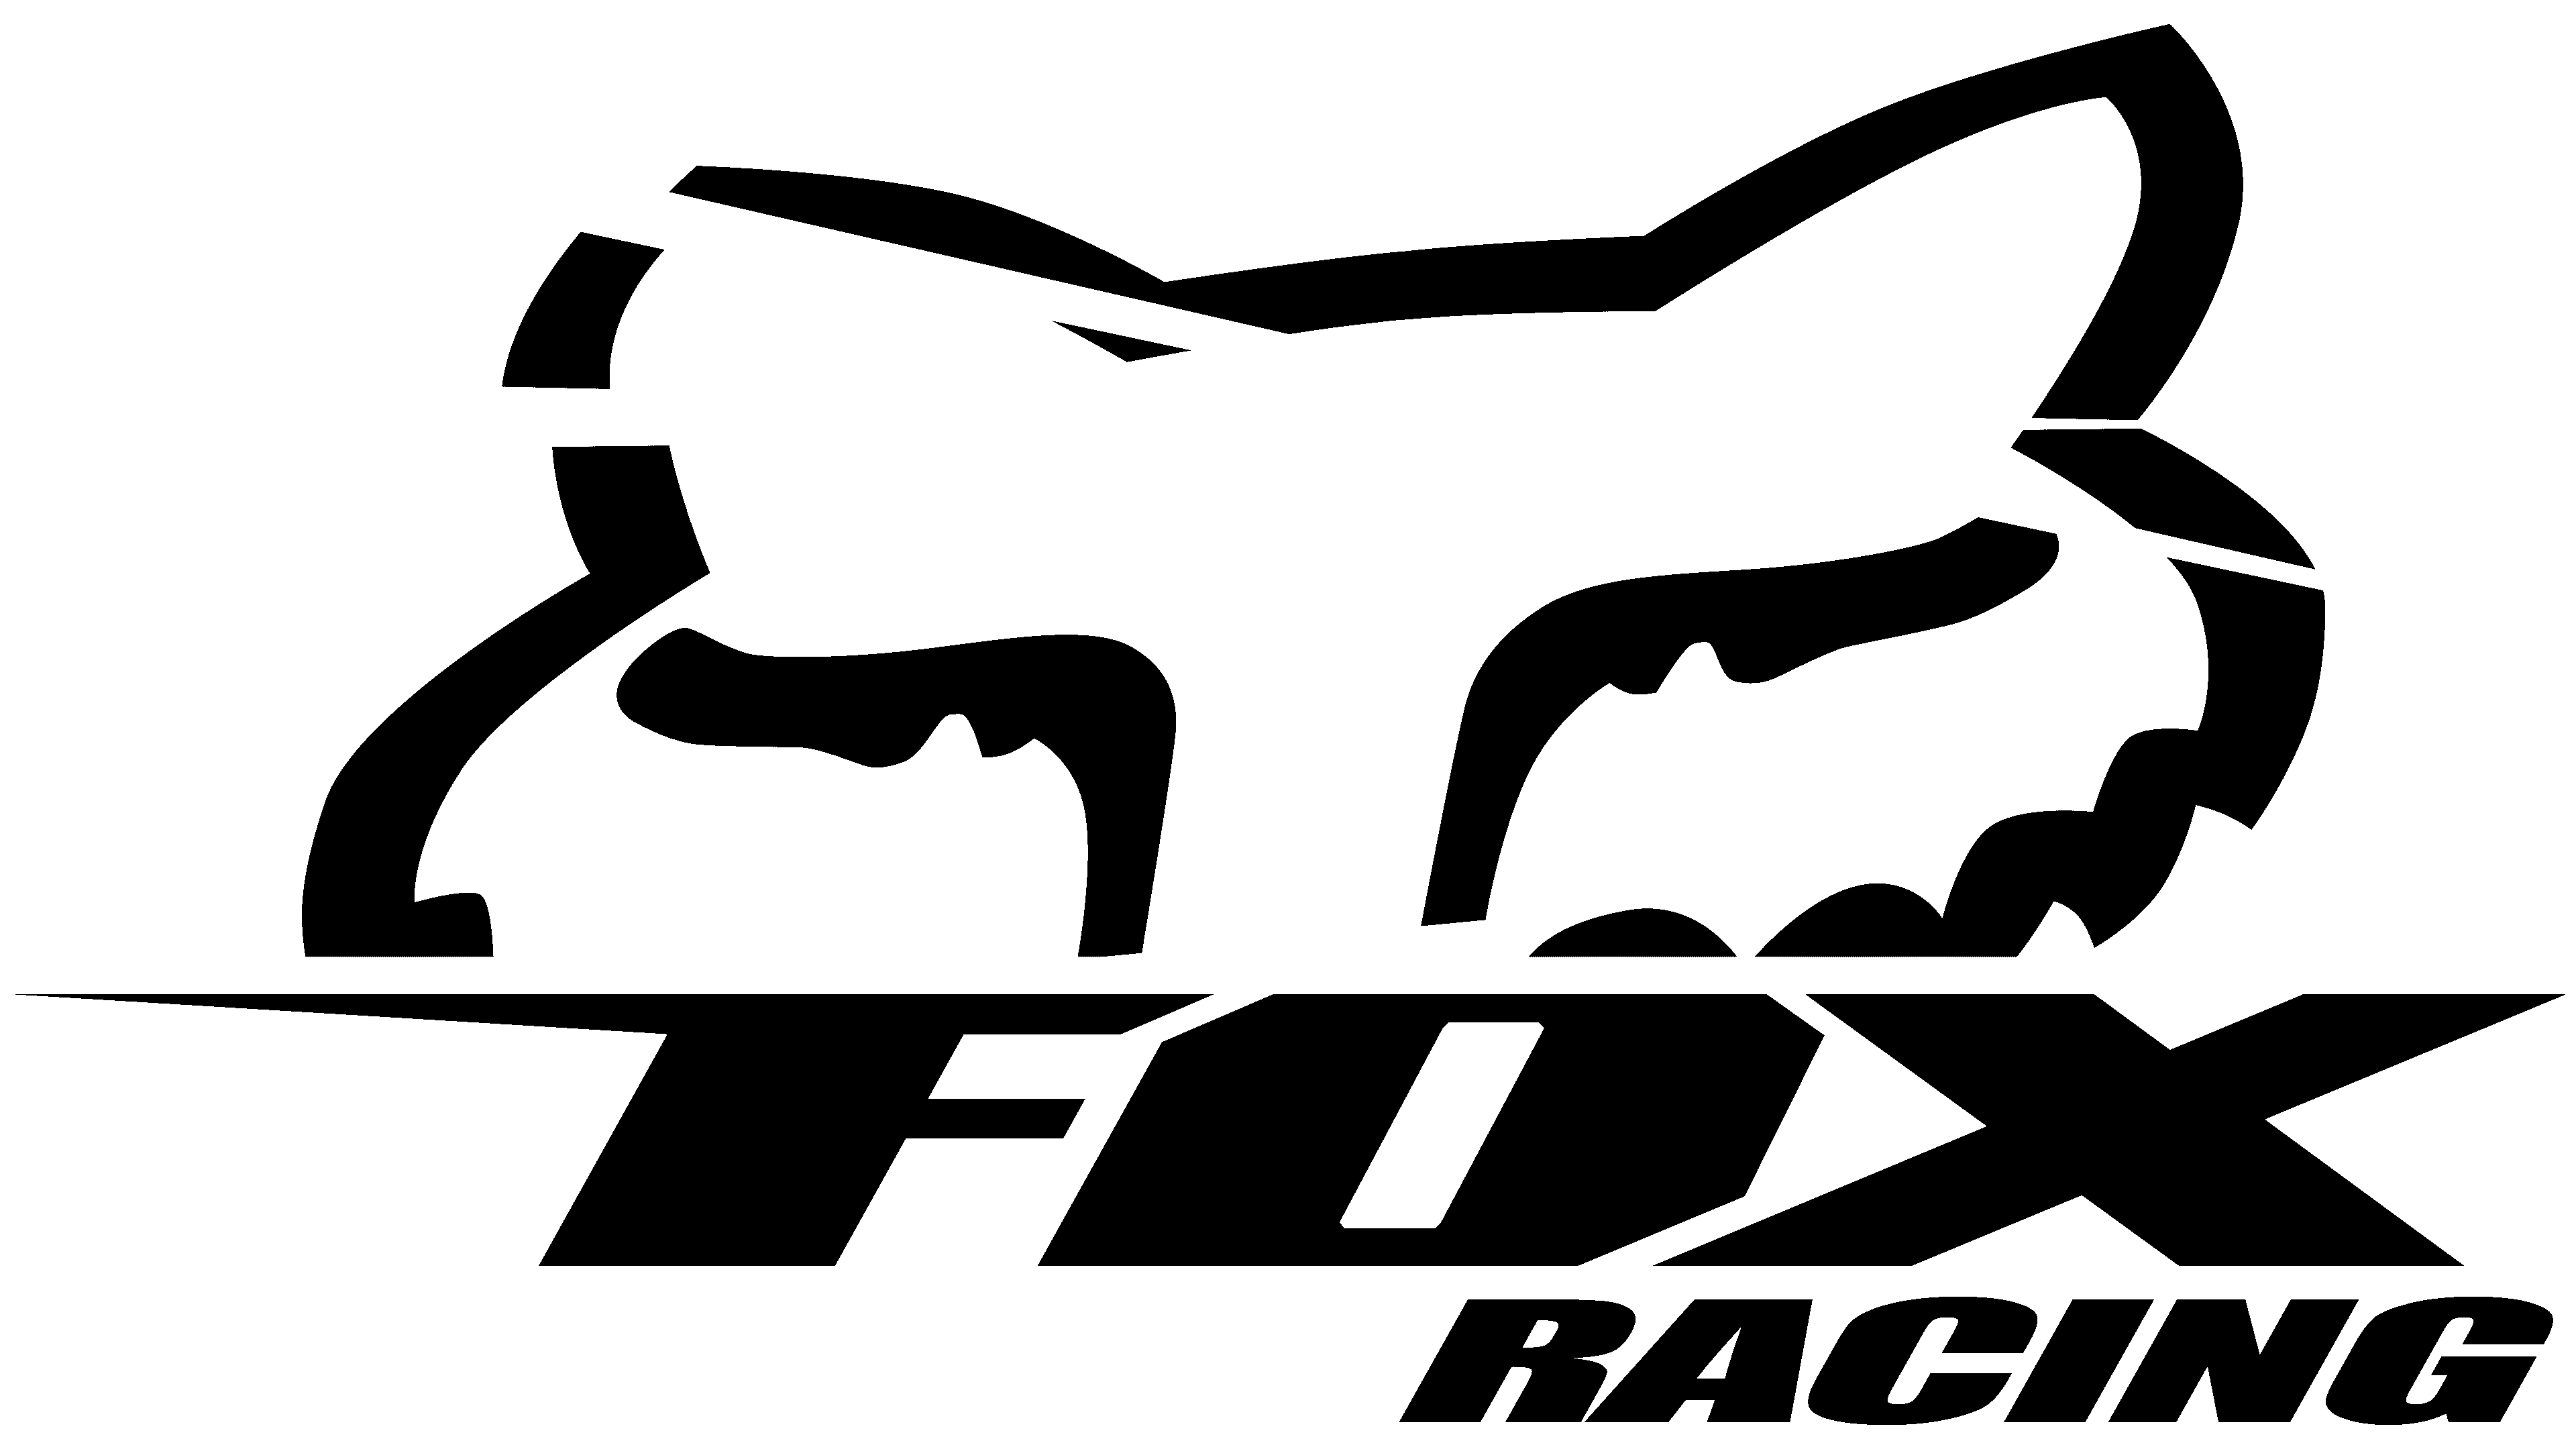 Bộ Đồ Fox Racing Gear Sets: Sự Lựa Chọn Hoàn Hảo Cho Cuộc Đua ...